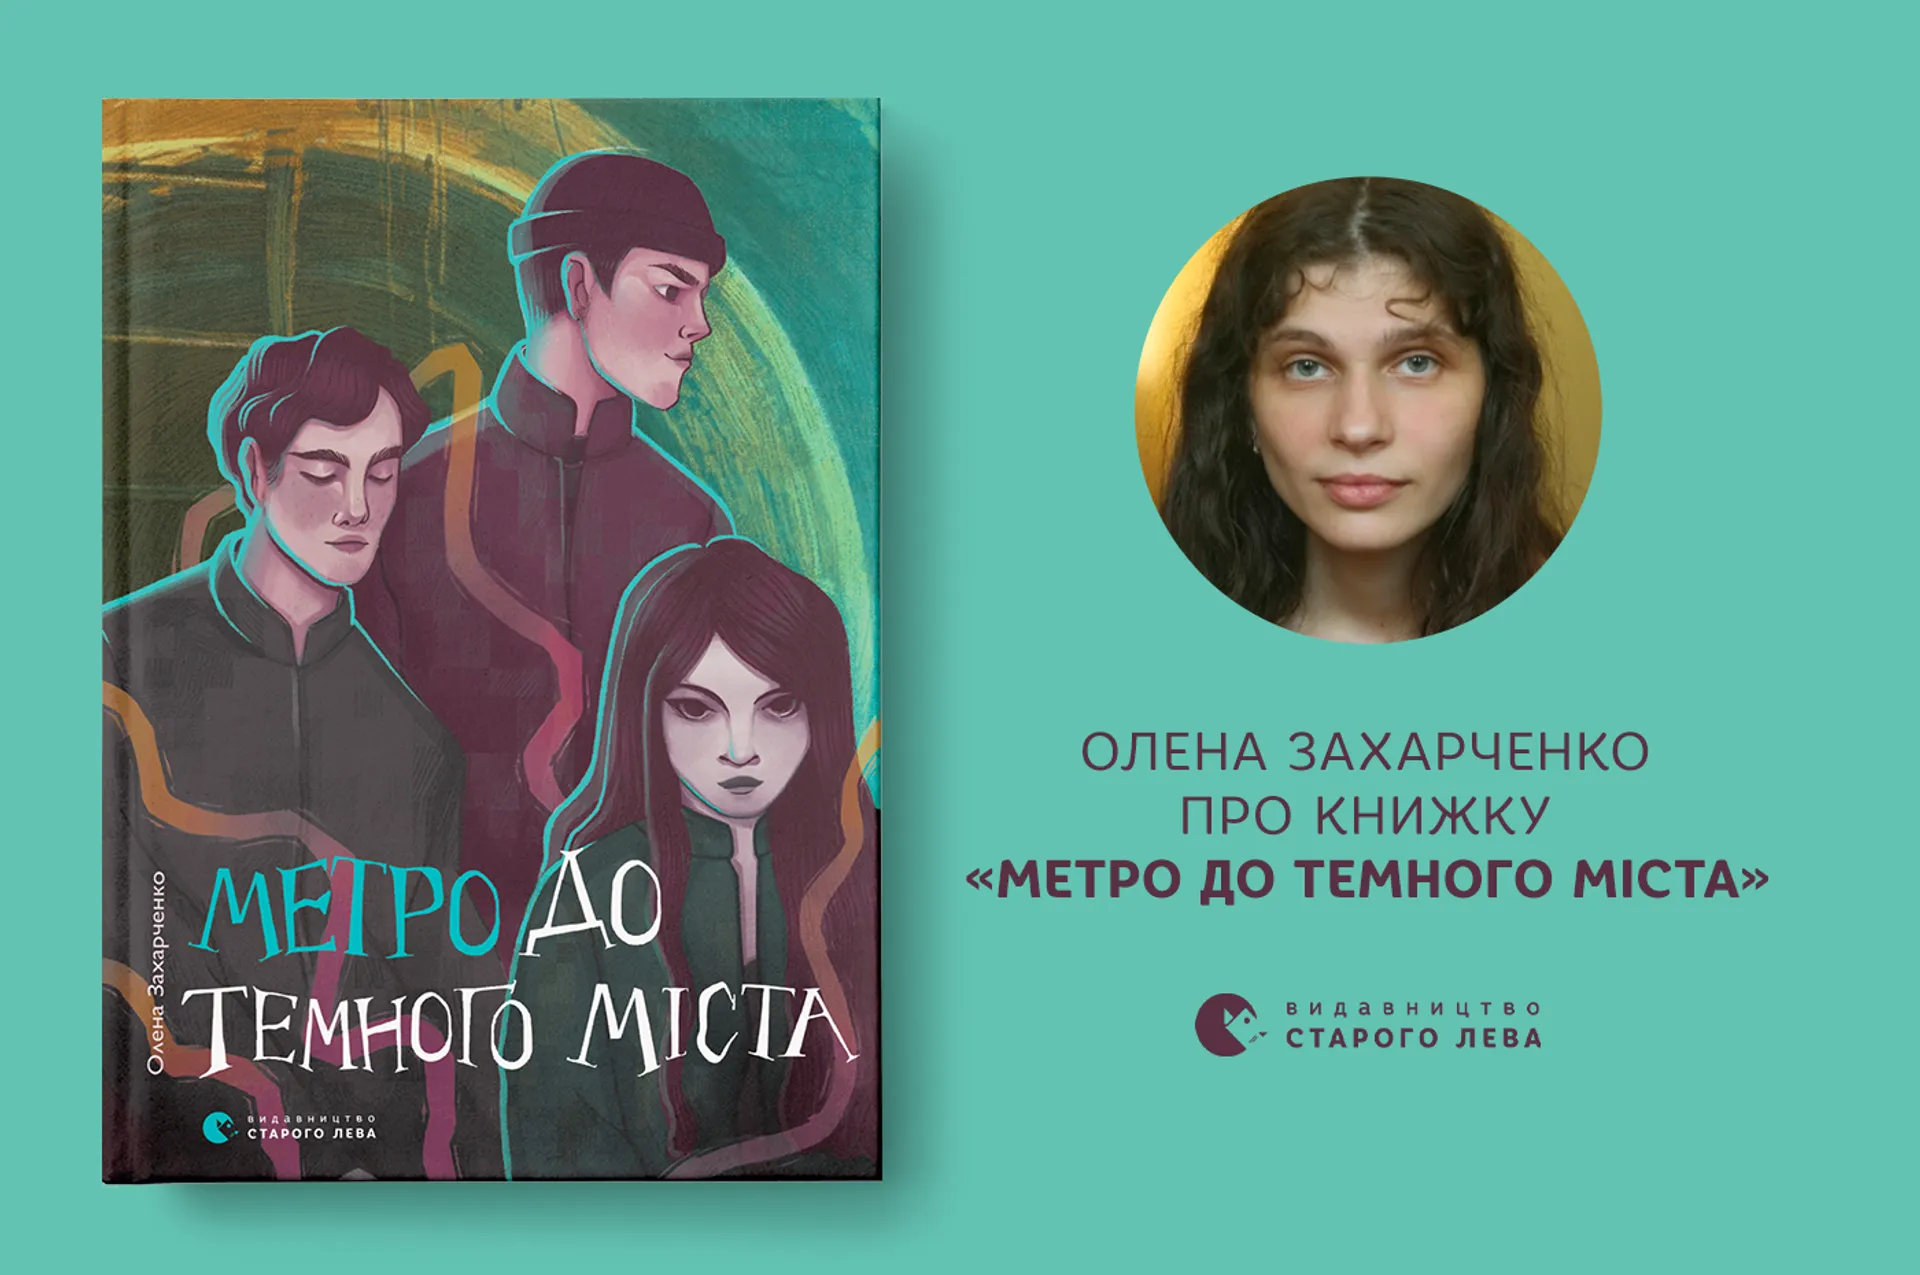 Олена Захарченко про книжку «Метро до Темного Міста»